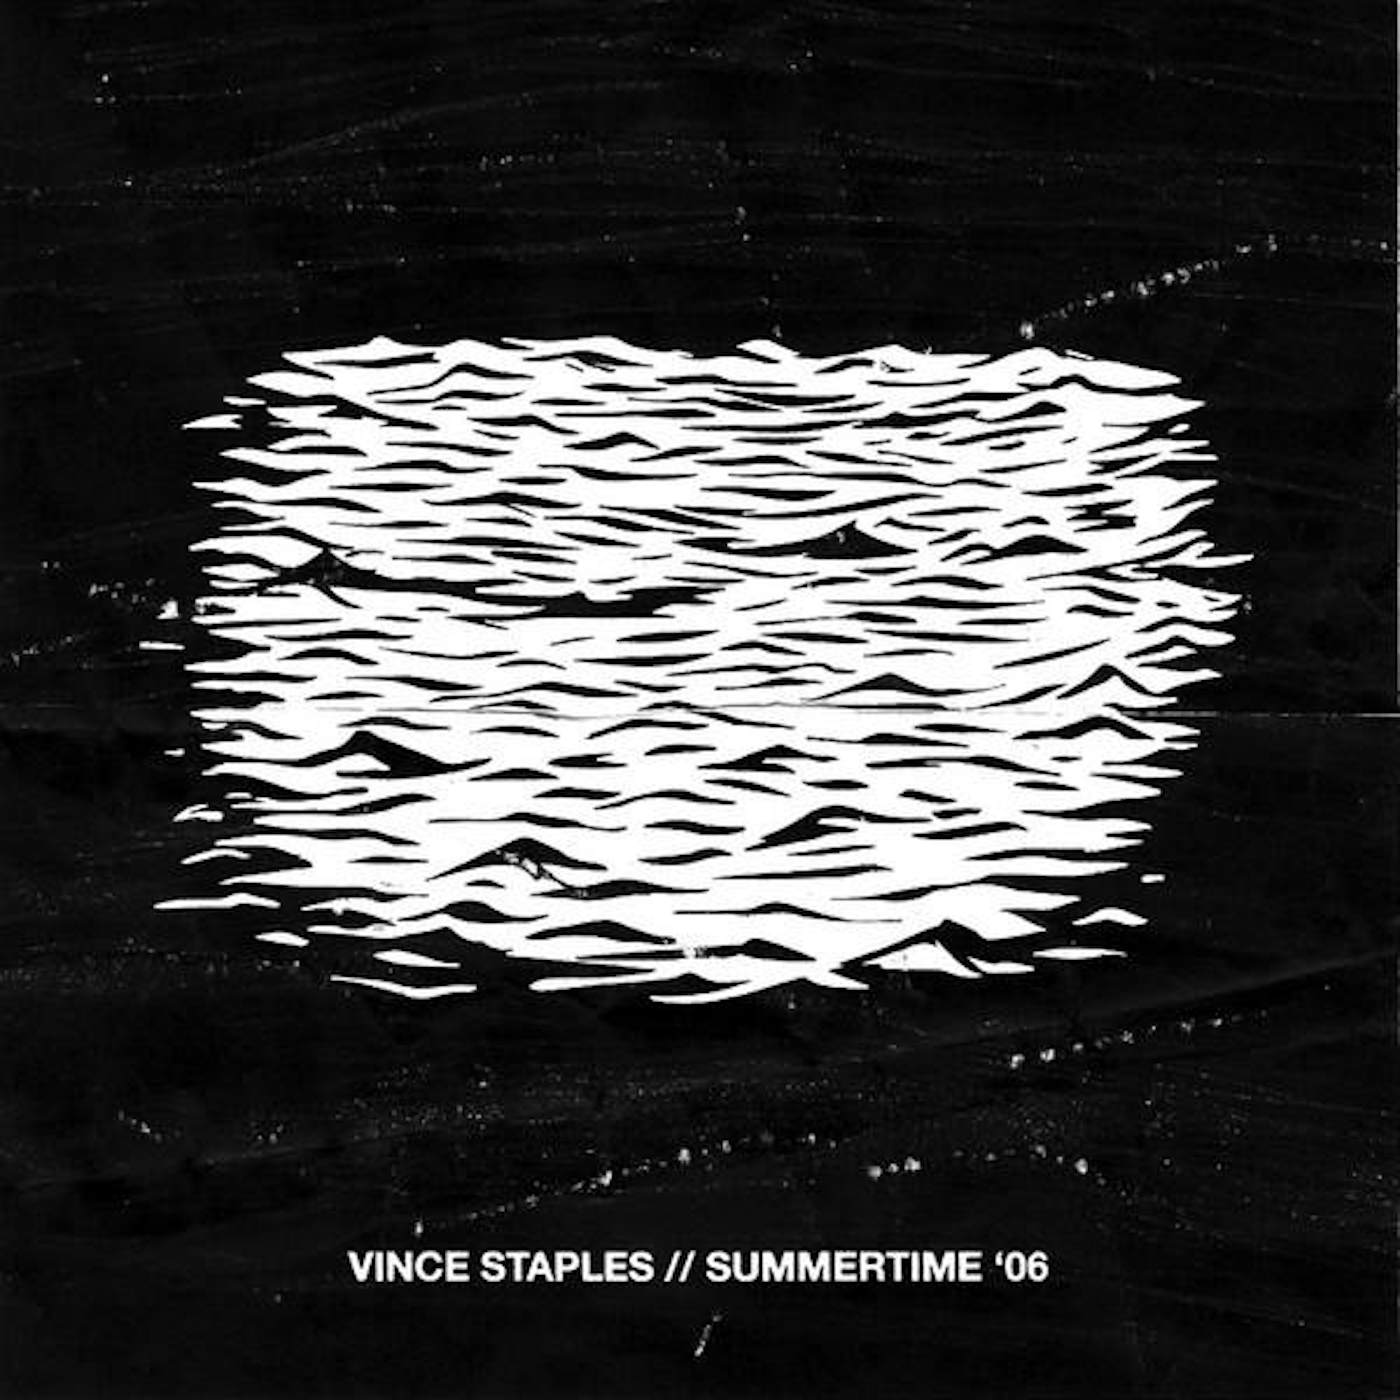 Vince Staples SUMMERTIME 06 (EXP) (SEGMENT 1) Vinyl Record